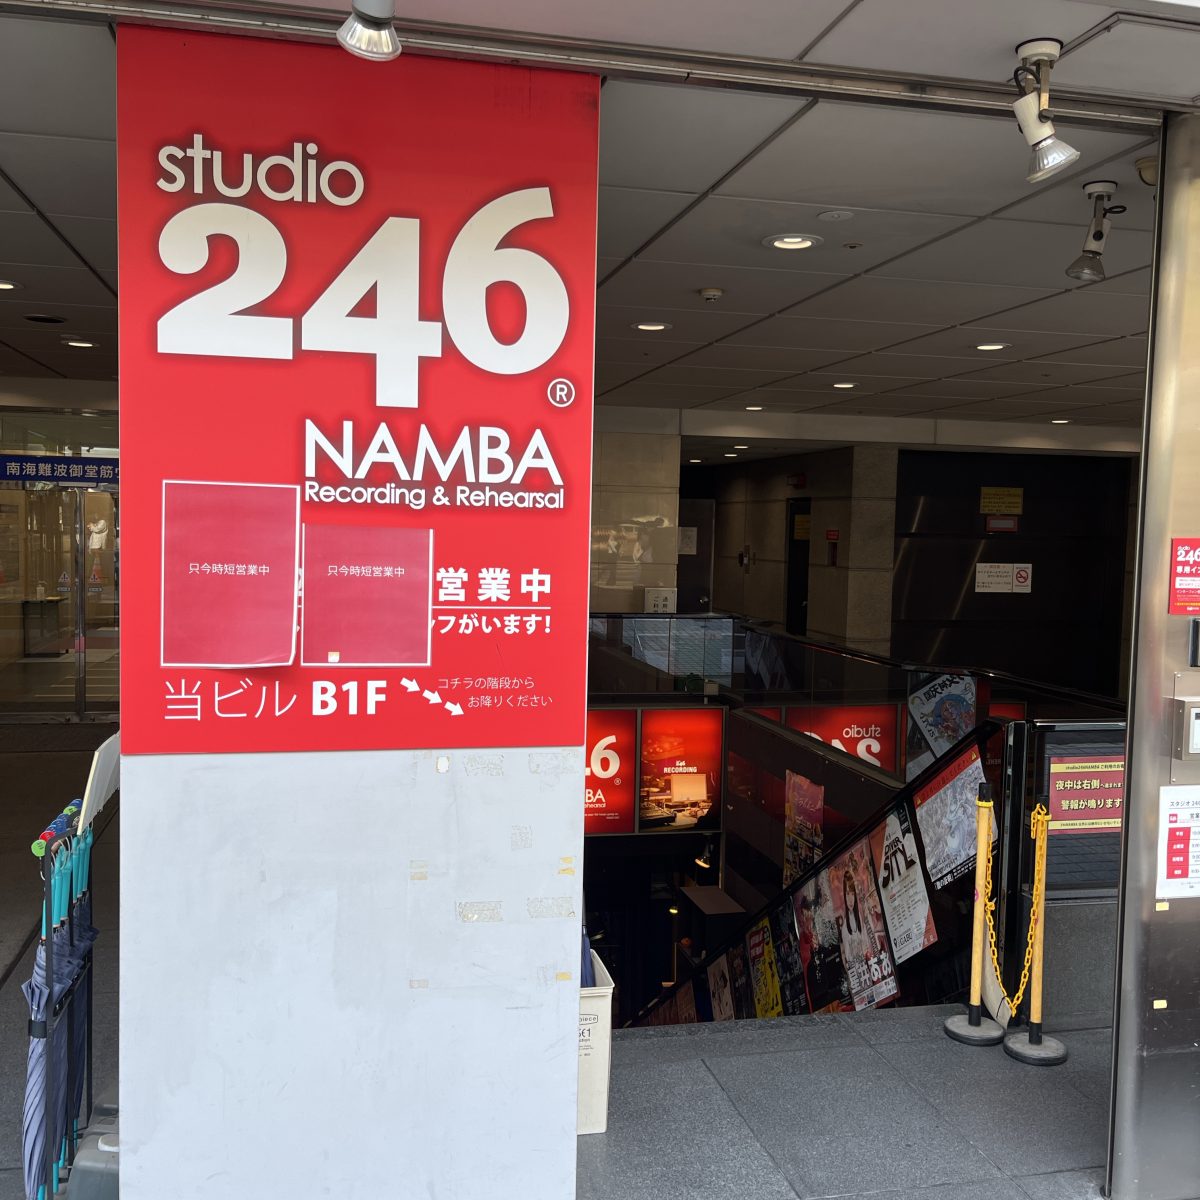 スタジオ 246 NAMBA